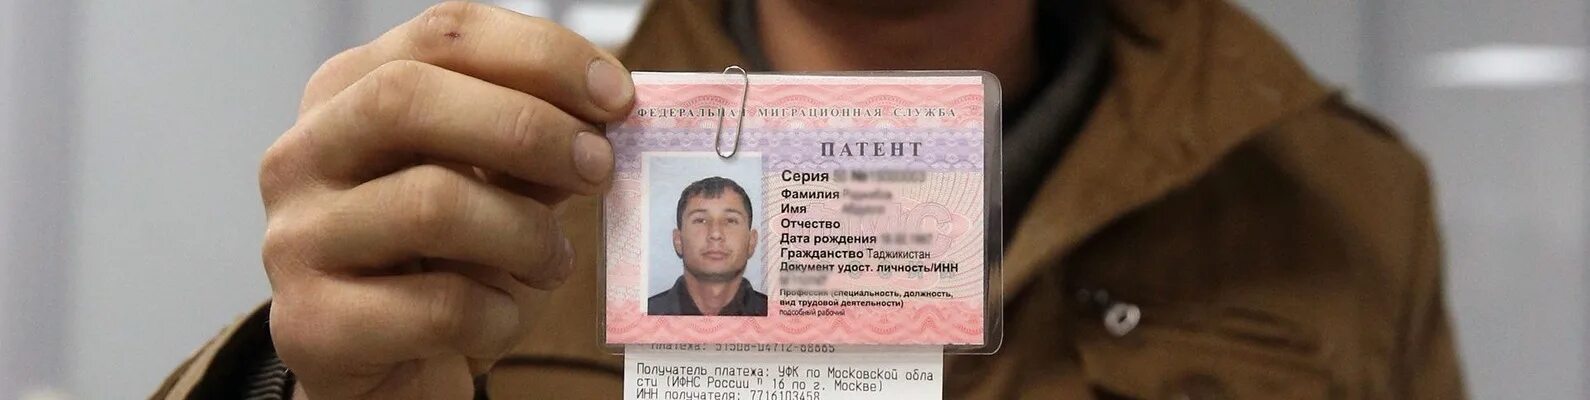 Патент для мигрантов. Патент для иностранных граждан. Патент фото. Патент для иностранных граждан Таджикистана. Гражданам таджикистана нужен патент